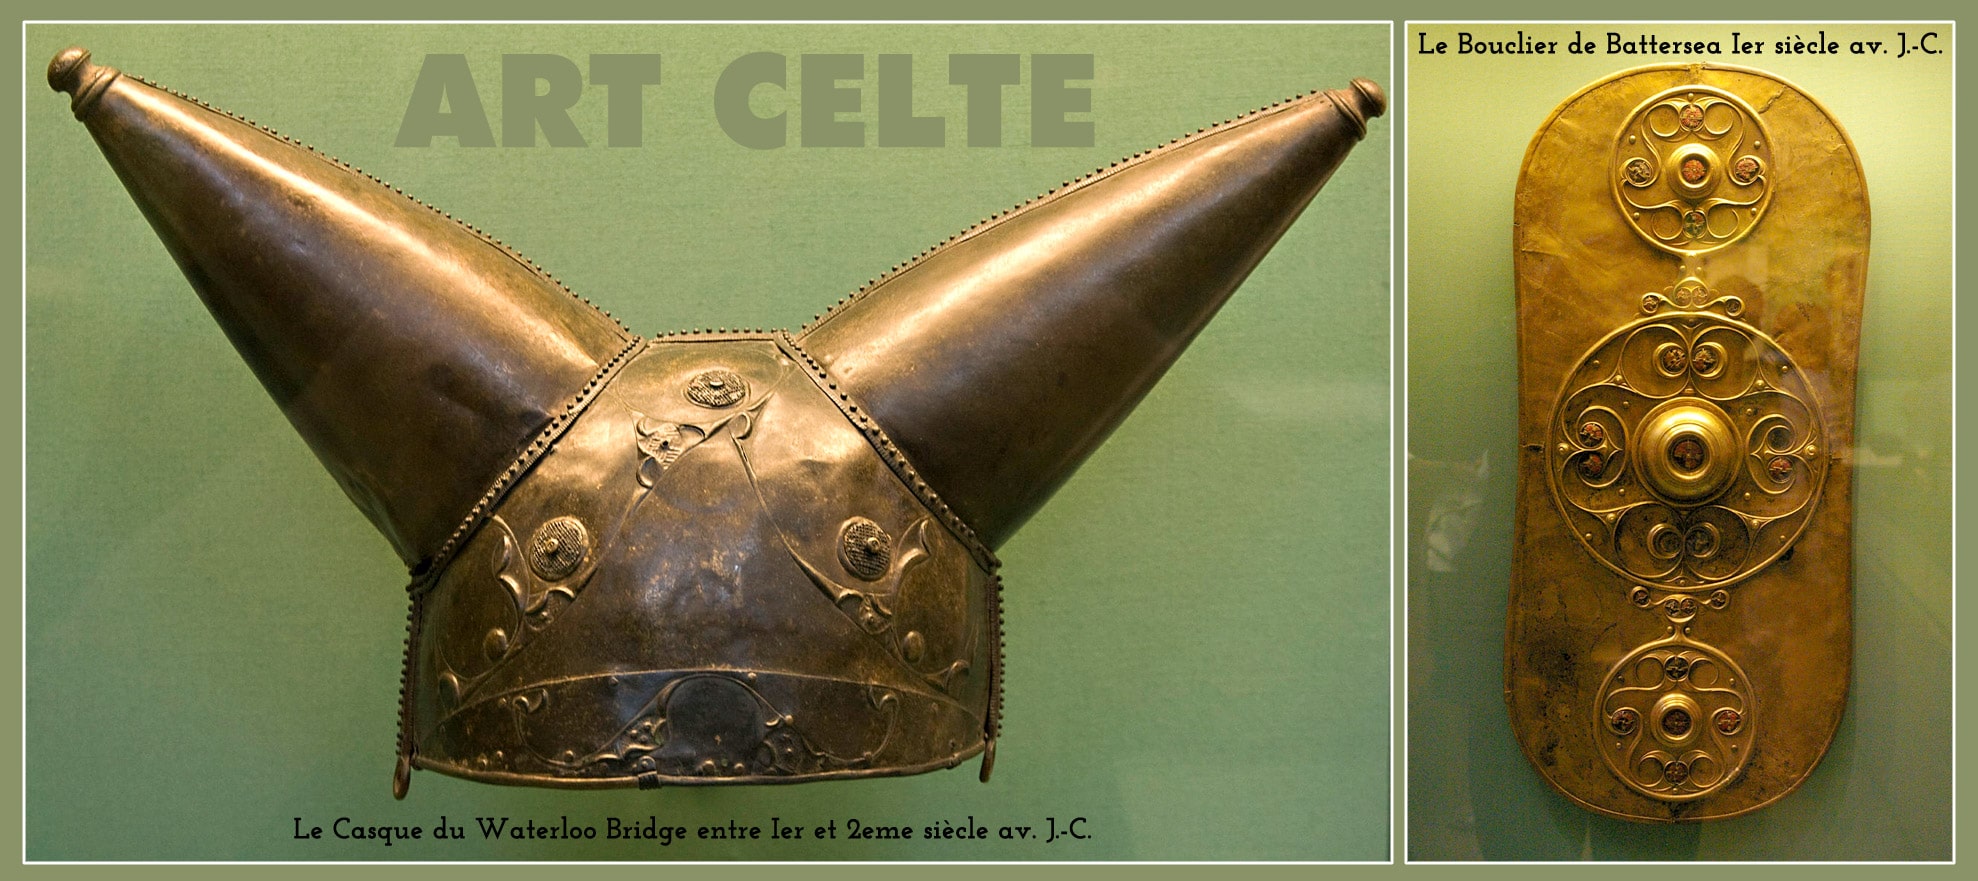 art_celte_pre_romain_tradition_celte_legendes_arthuriennes_excalibur